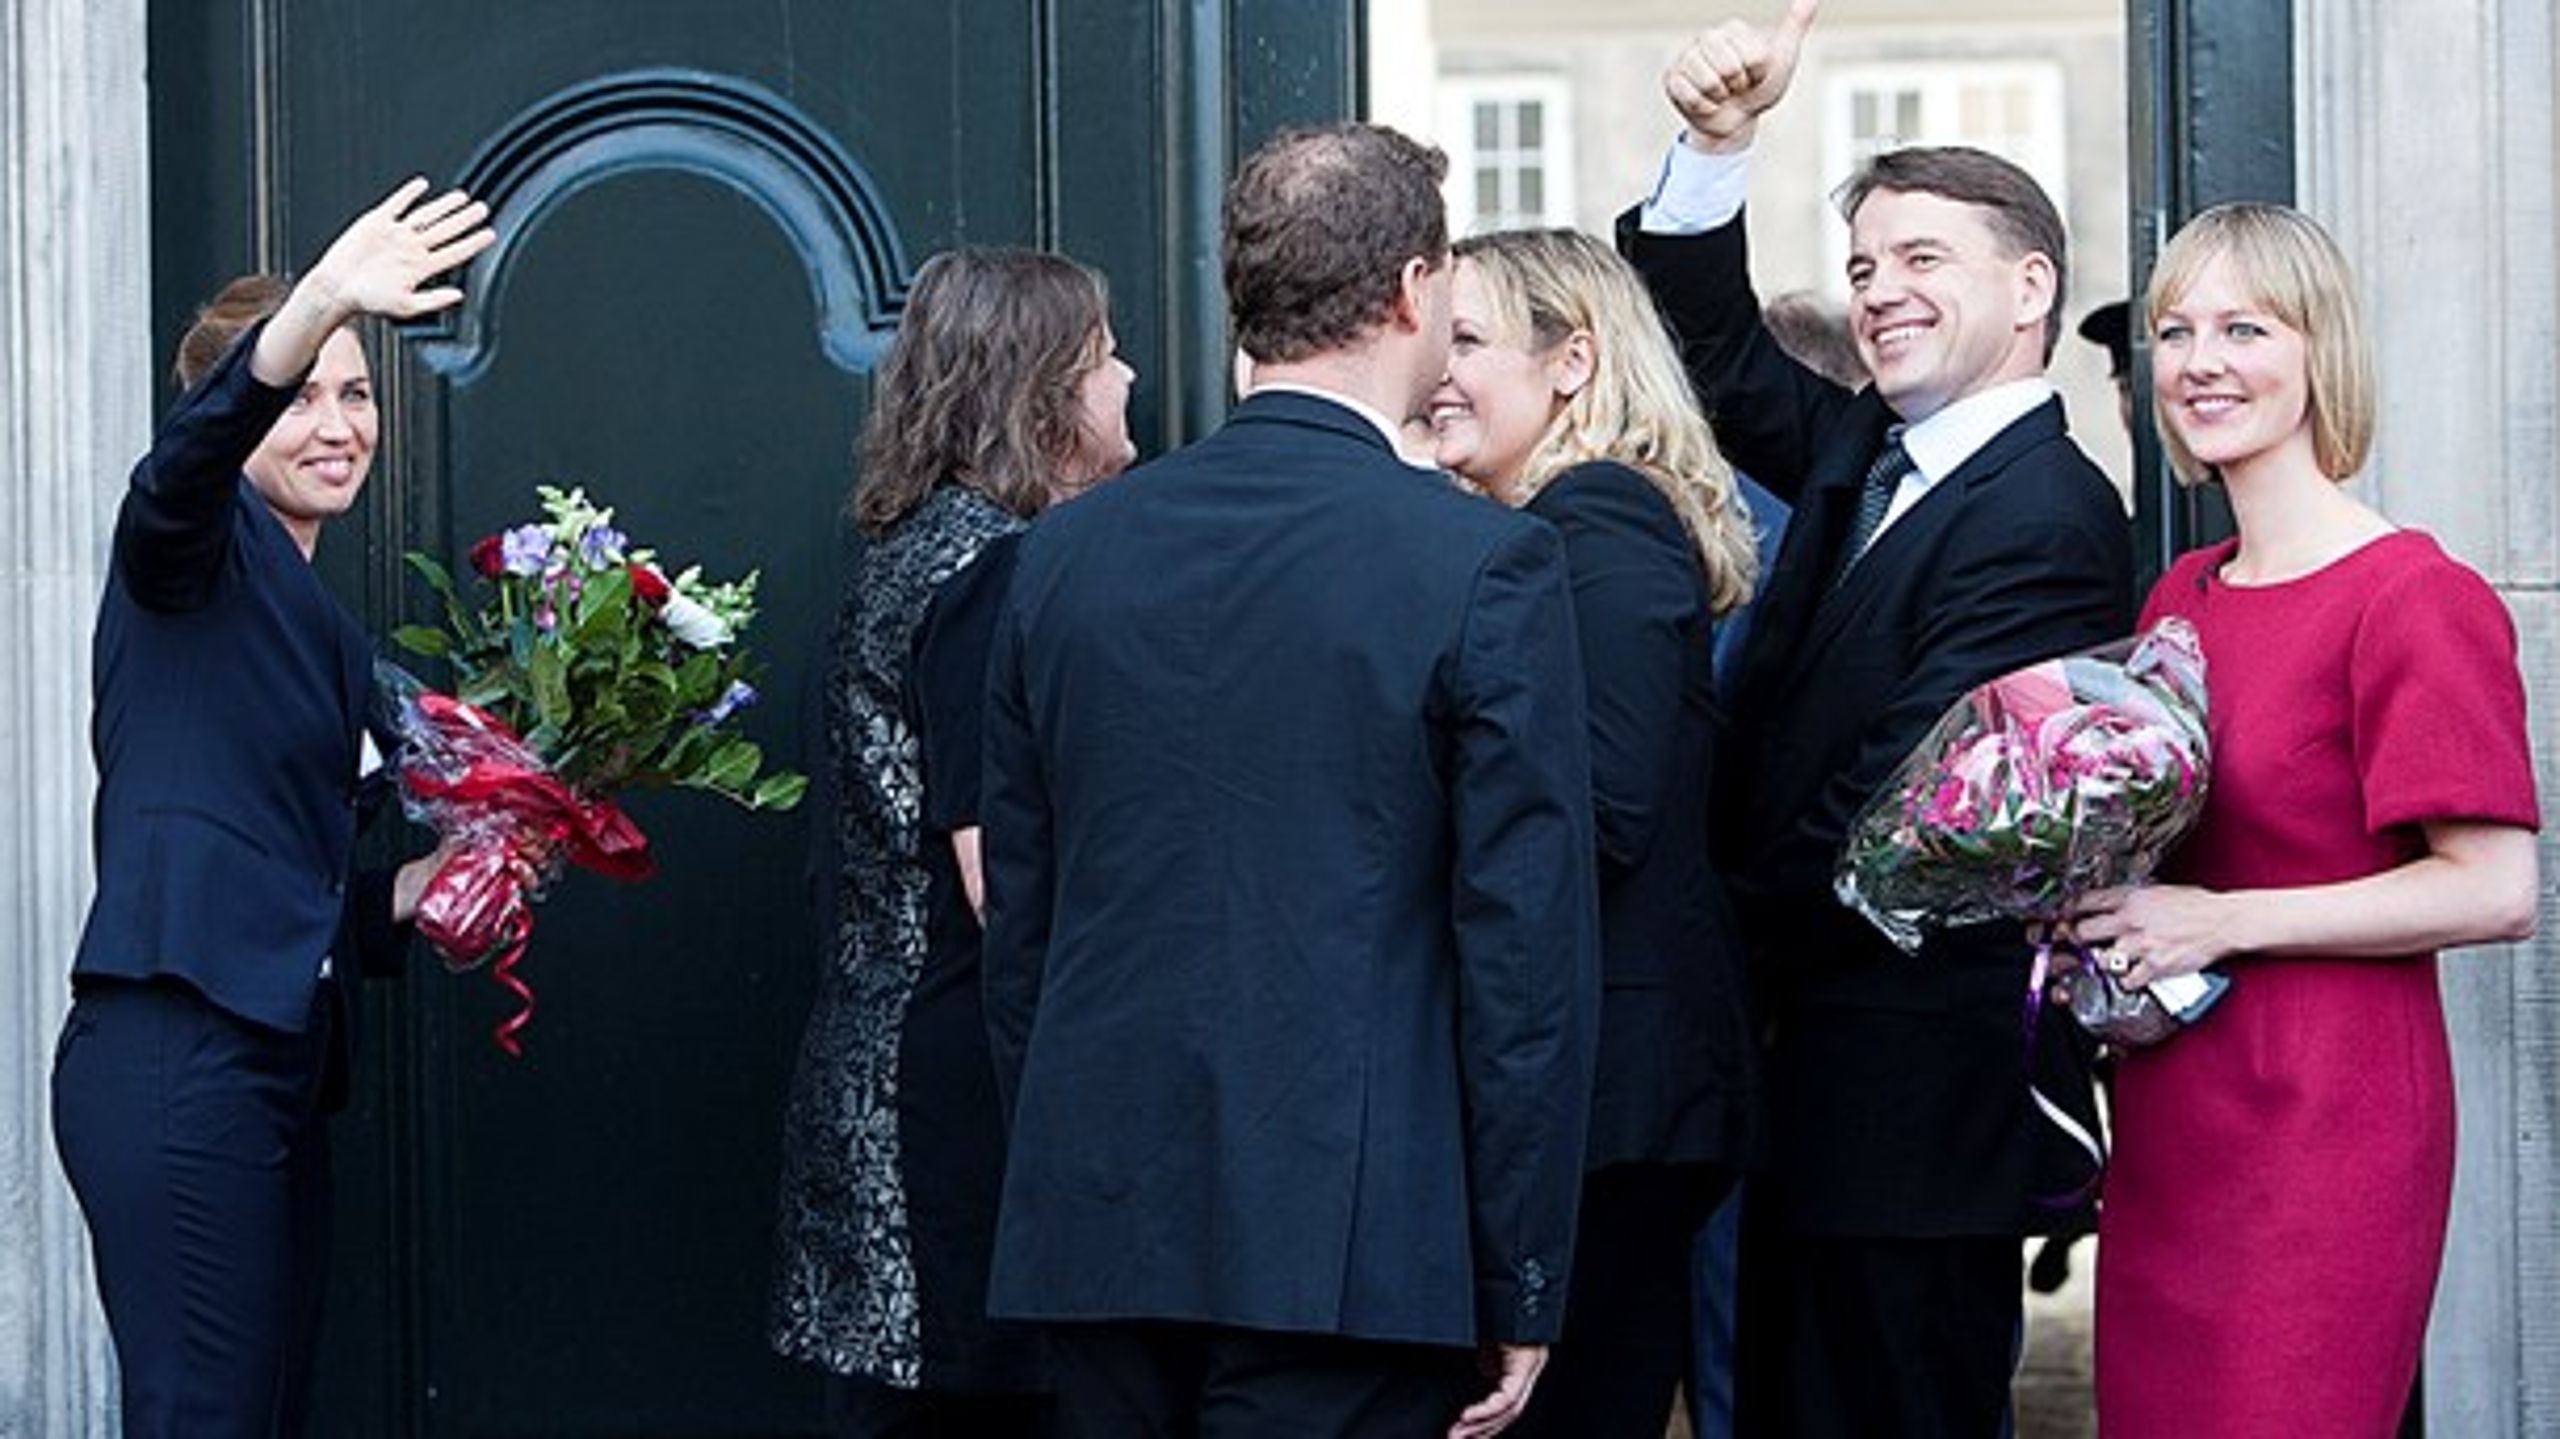 Christian Friis Bach (R) (til højre) blev i 2011 udnævnt som udviklingsminister i Thorning-regeringen sammen med Mette Frederiksen (S), der blev beskæftigelsesminister. Senere gik han af efter den såkaldte GGGI-sag.